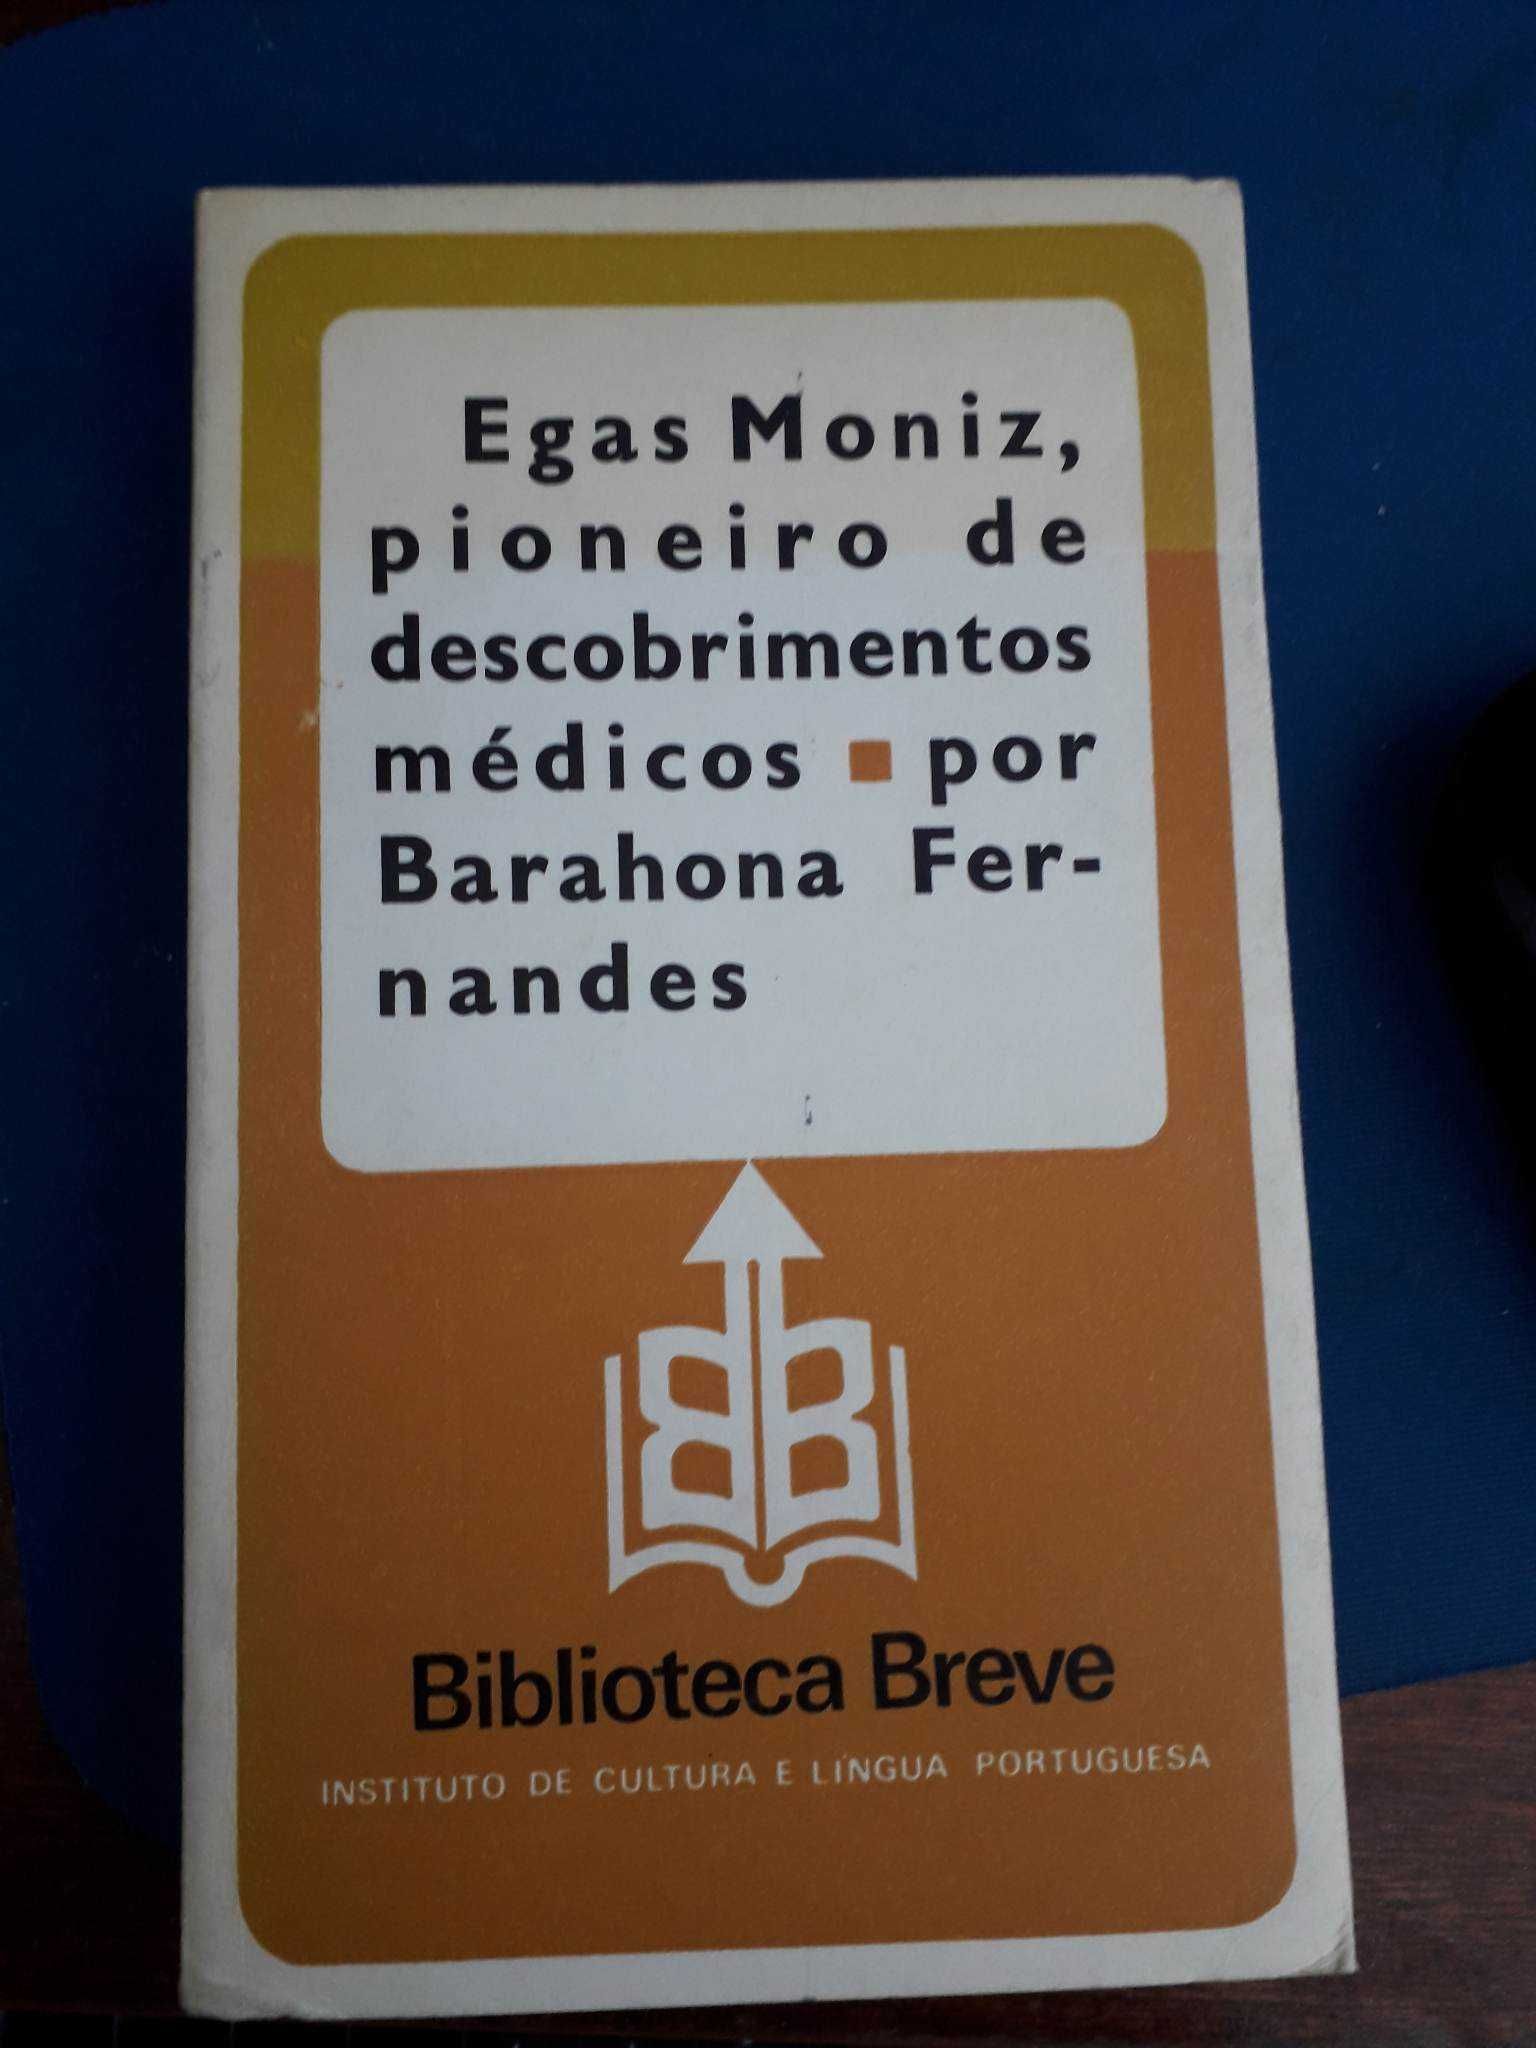 Livro "Egas Moniz, pioneiro de descobrimentos médicos"